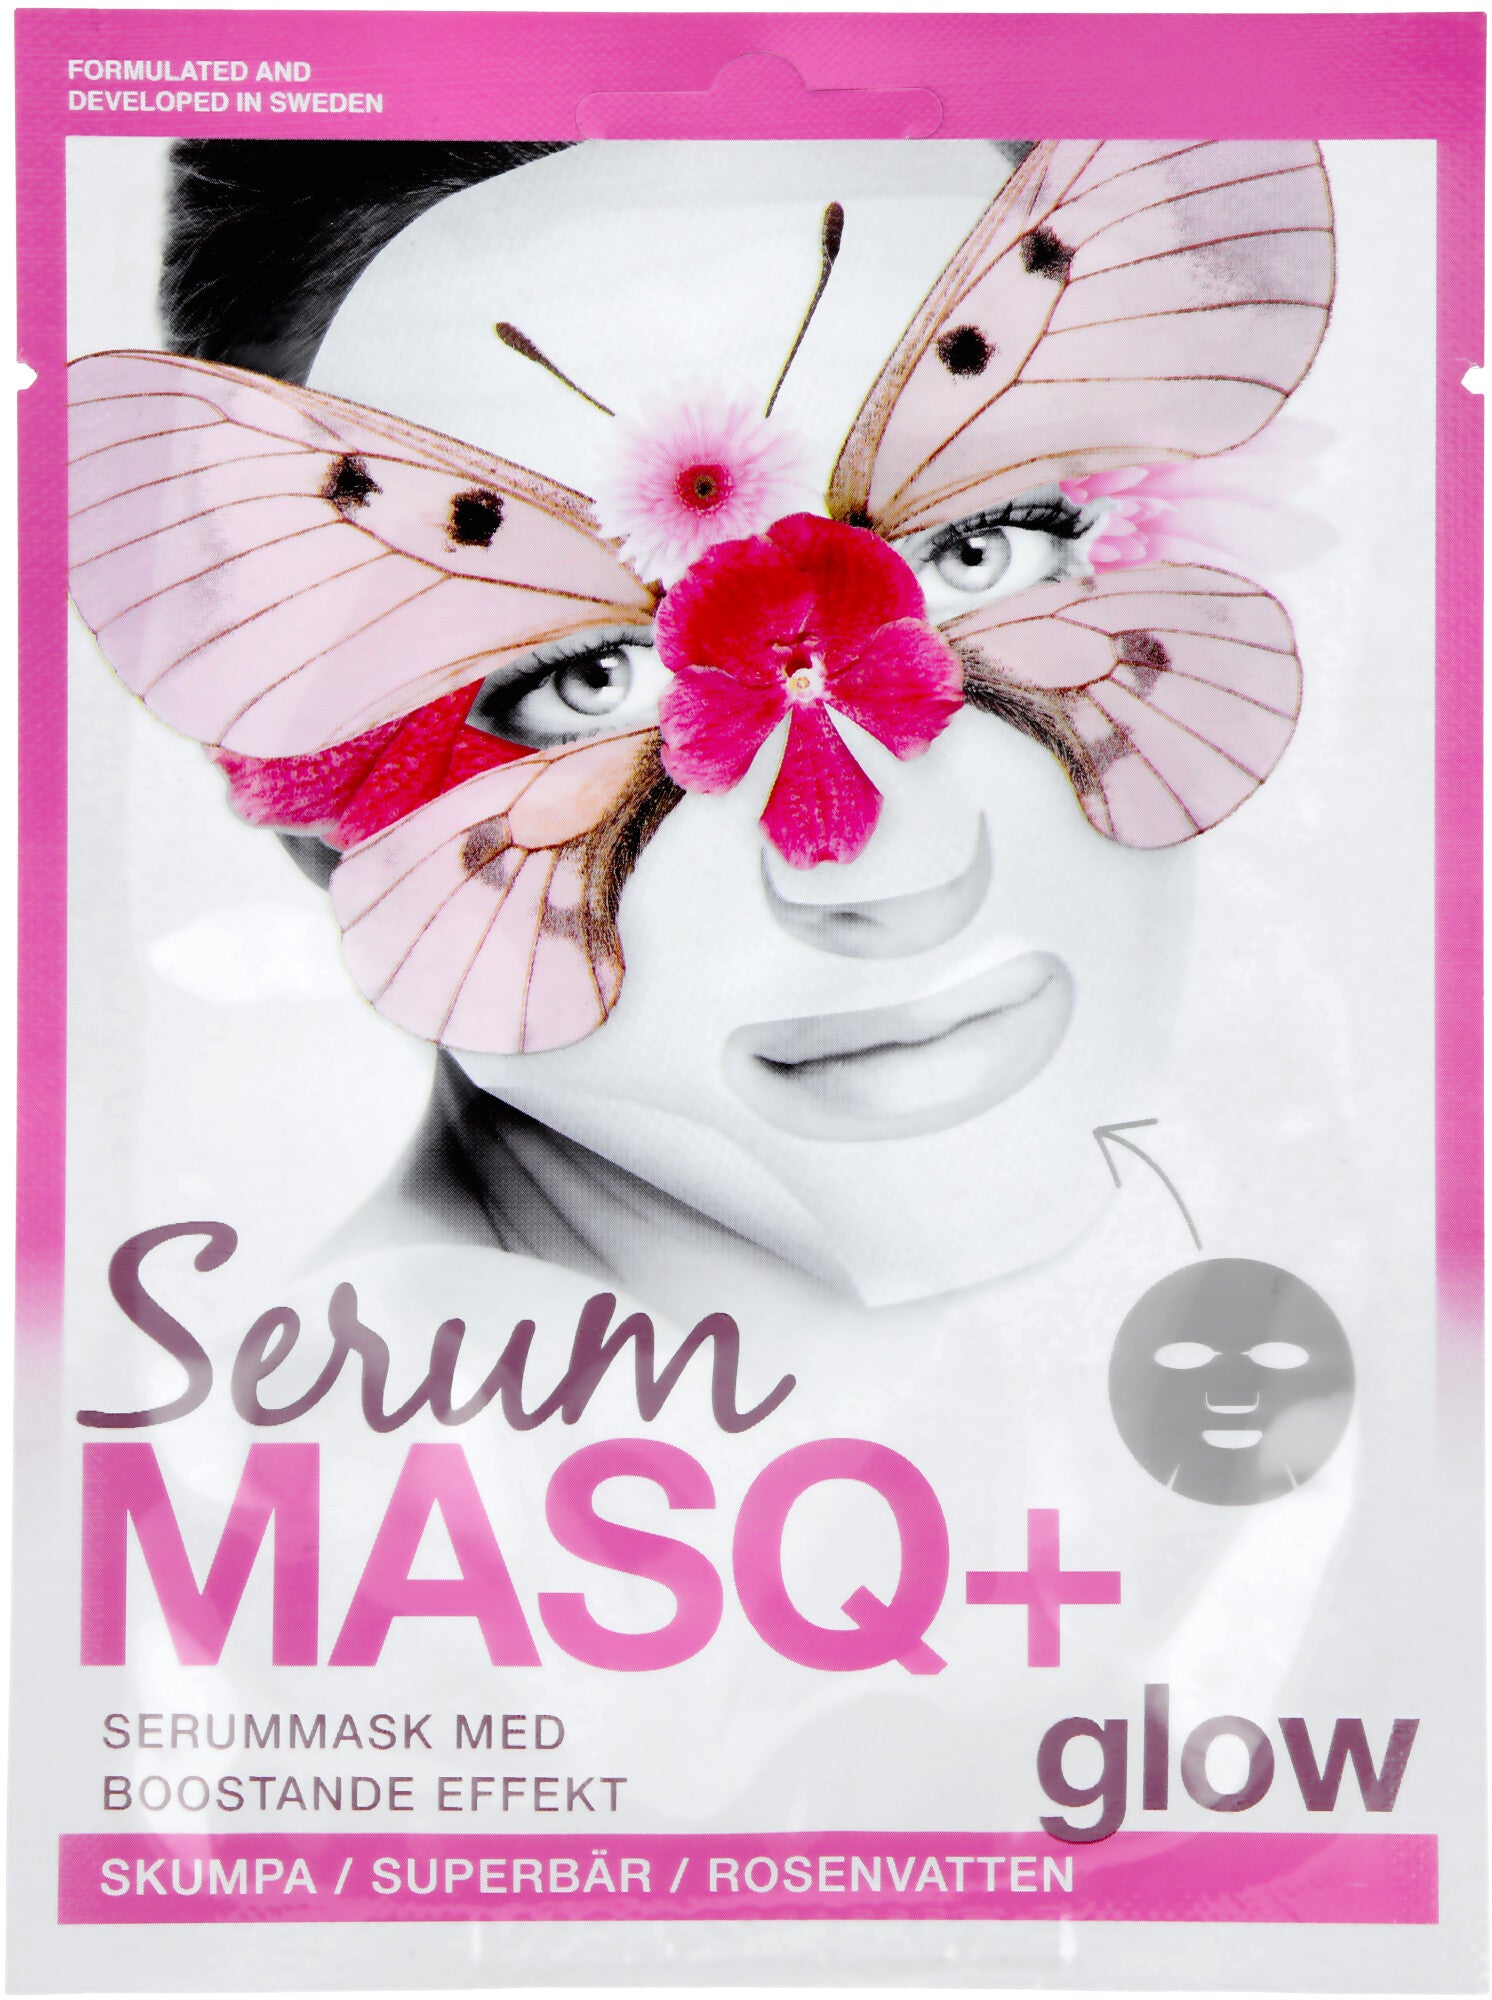 Serum MASQ+ glow